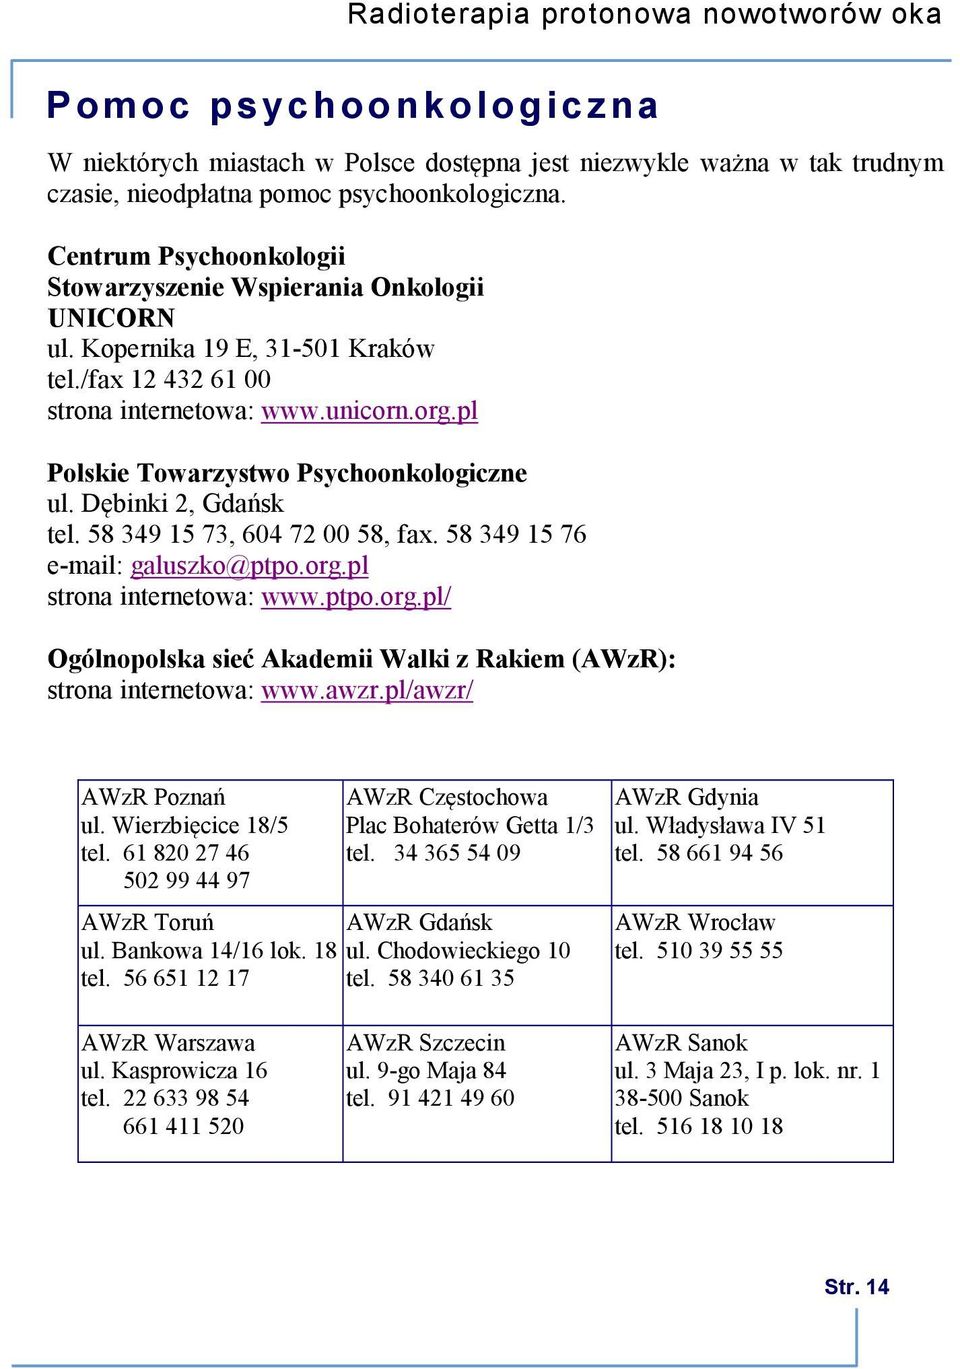 pl Polskie Towarzystwo Psychoonkologiczne ul. Dębinki 2, Gdańsk tel. 58 349 15 73, 604 72 00 58, fax. 58 349 15 76 e-mail: galuszko@ptpo.org.